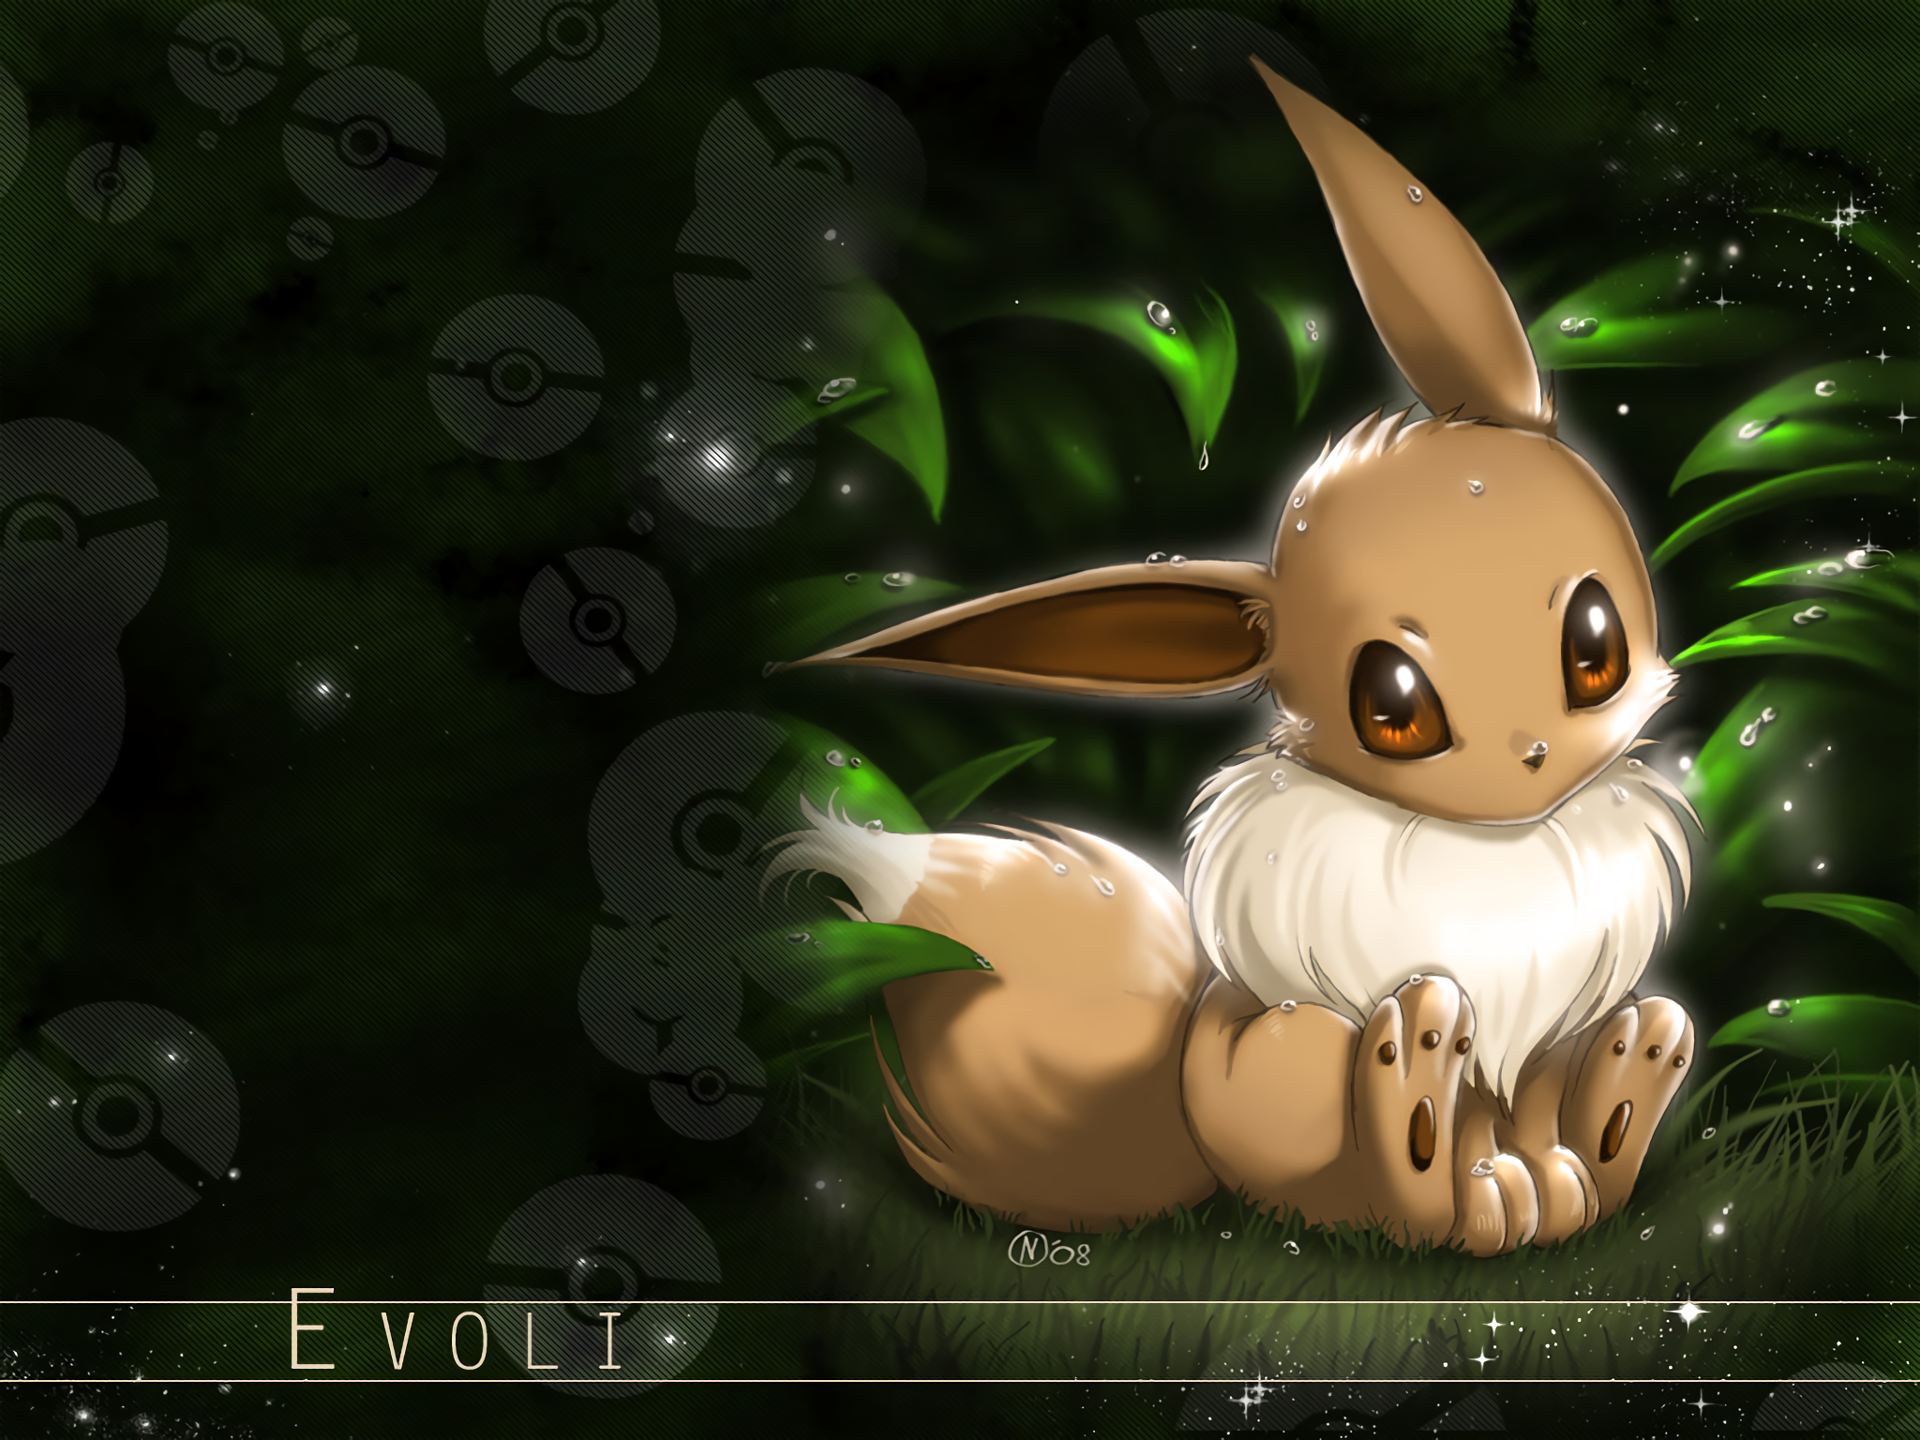 HD pokemon(eevee evolutions) wallpapers | Peakpx